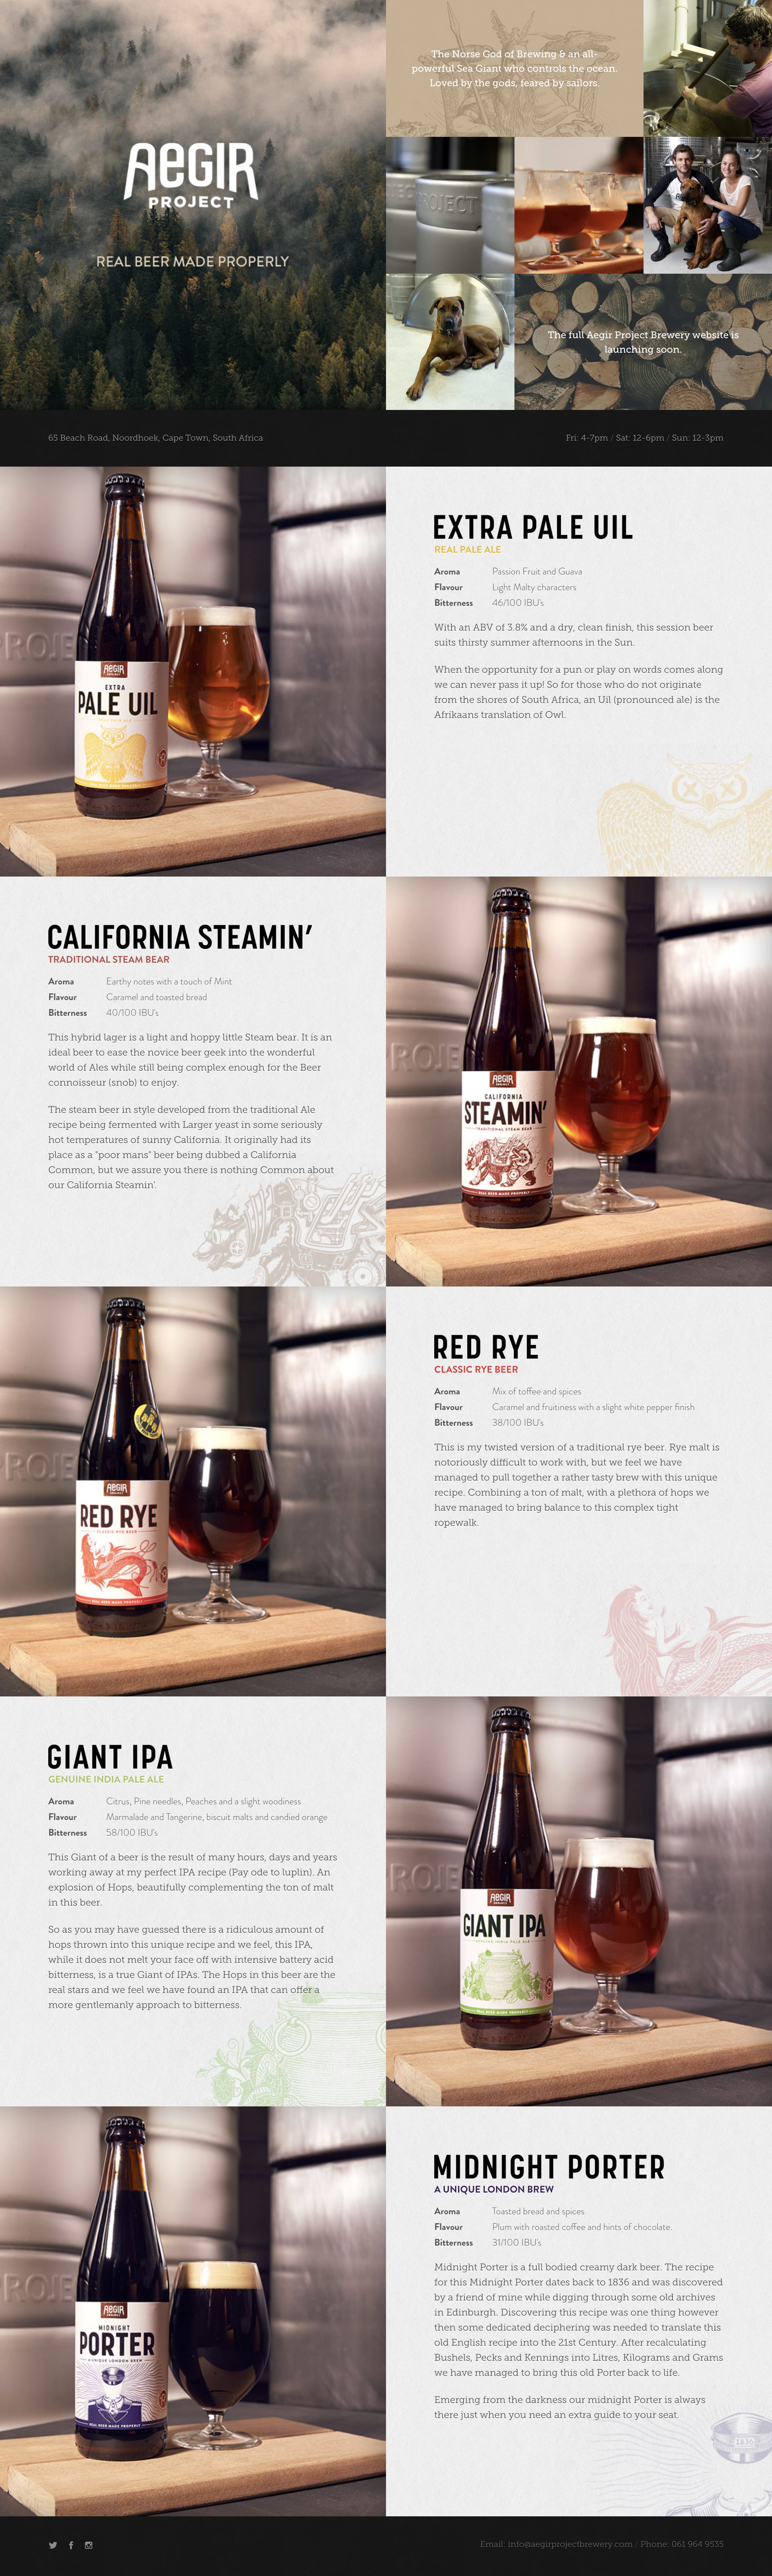 Aegir Project Brewery Website Screenshot